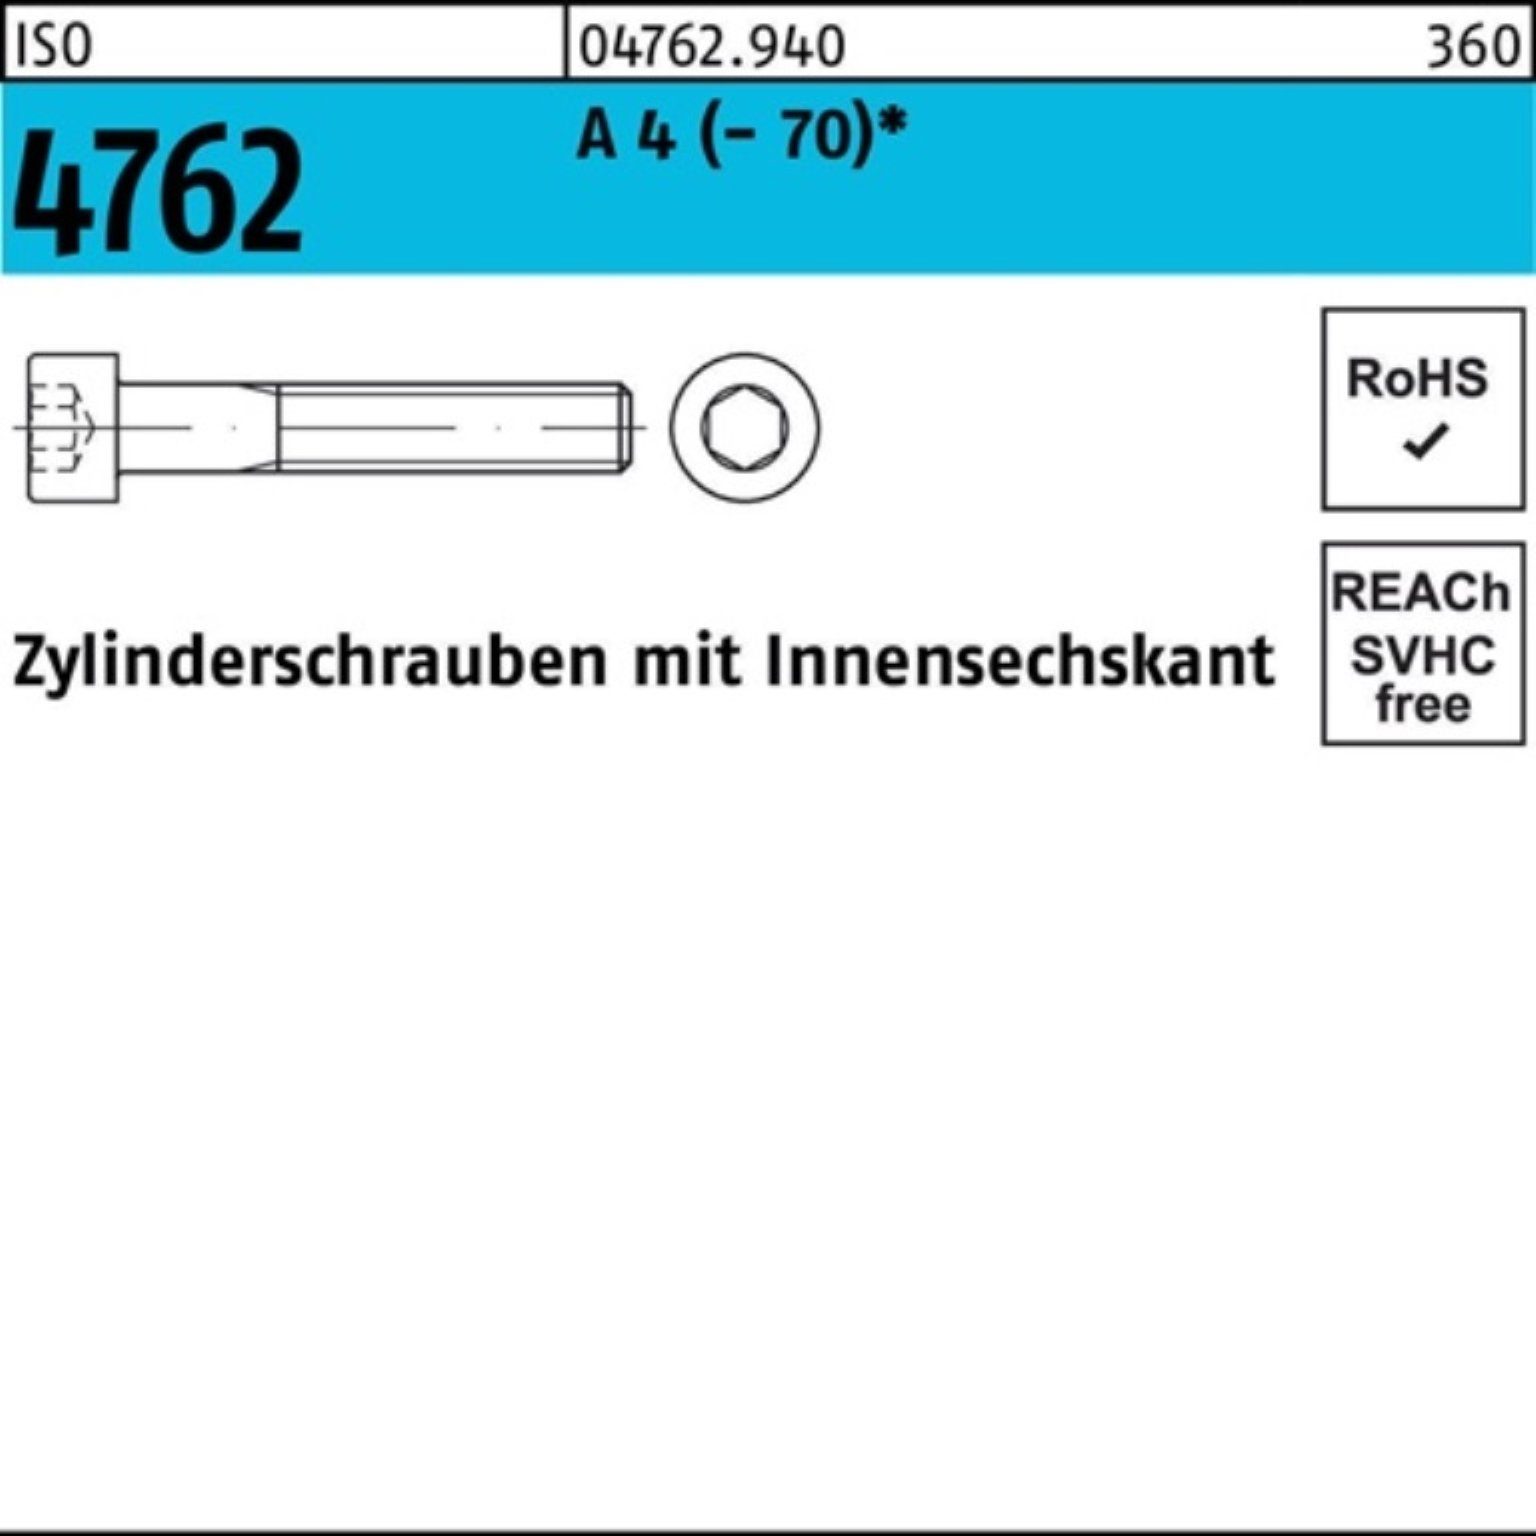 Reyher Zylinderschraube 100er Zylinderschraube 100 Pack M6x (70) ISO Innen-6kt 4762 20 S 4 A